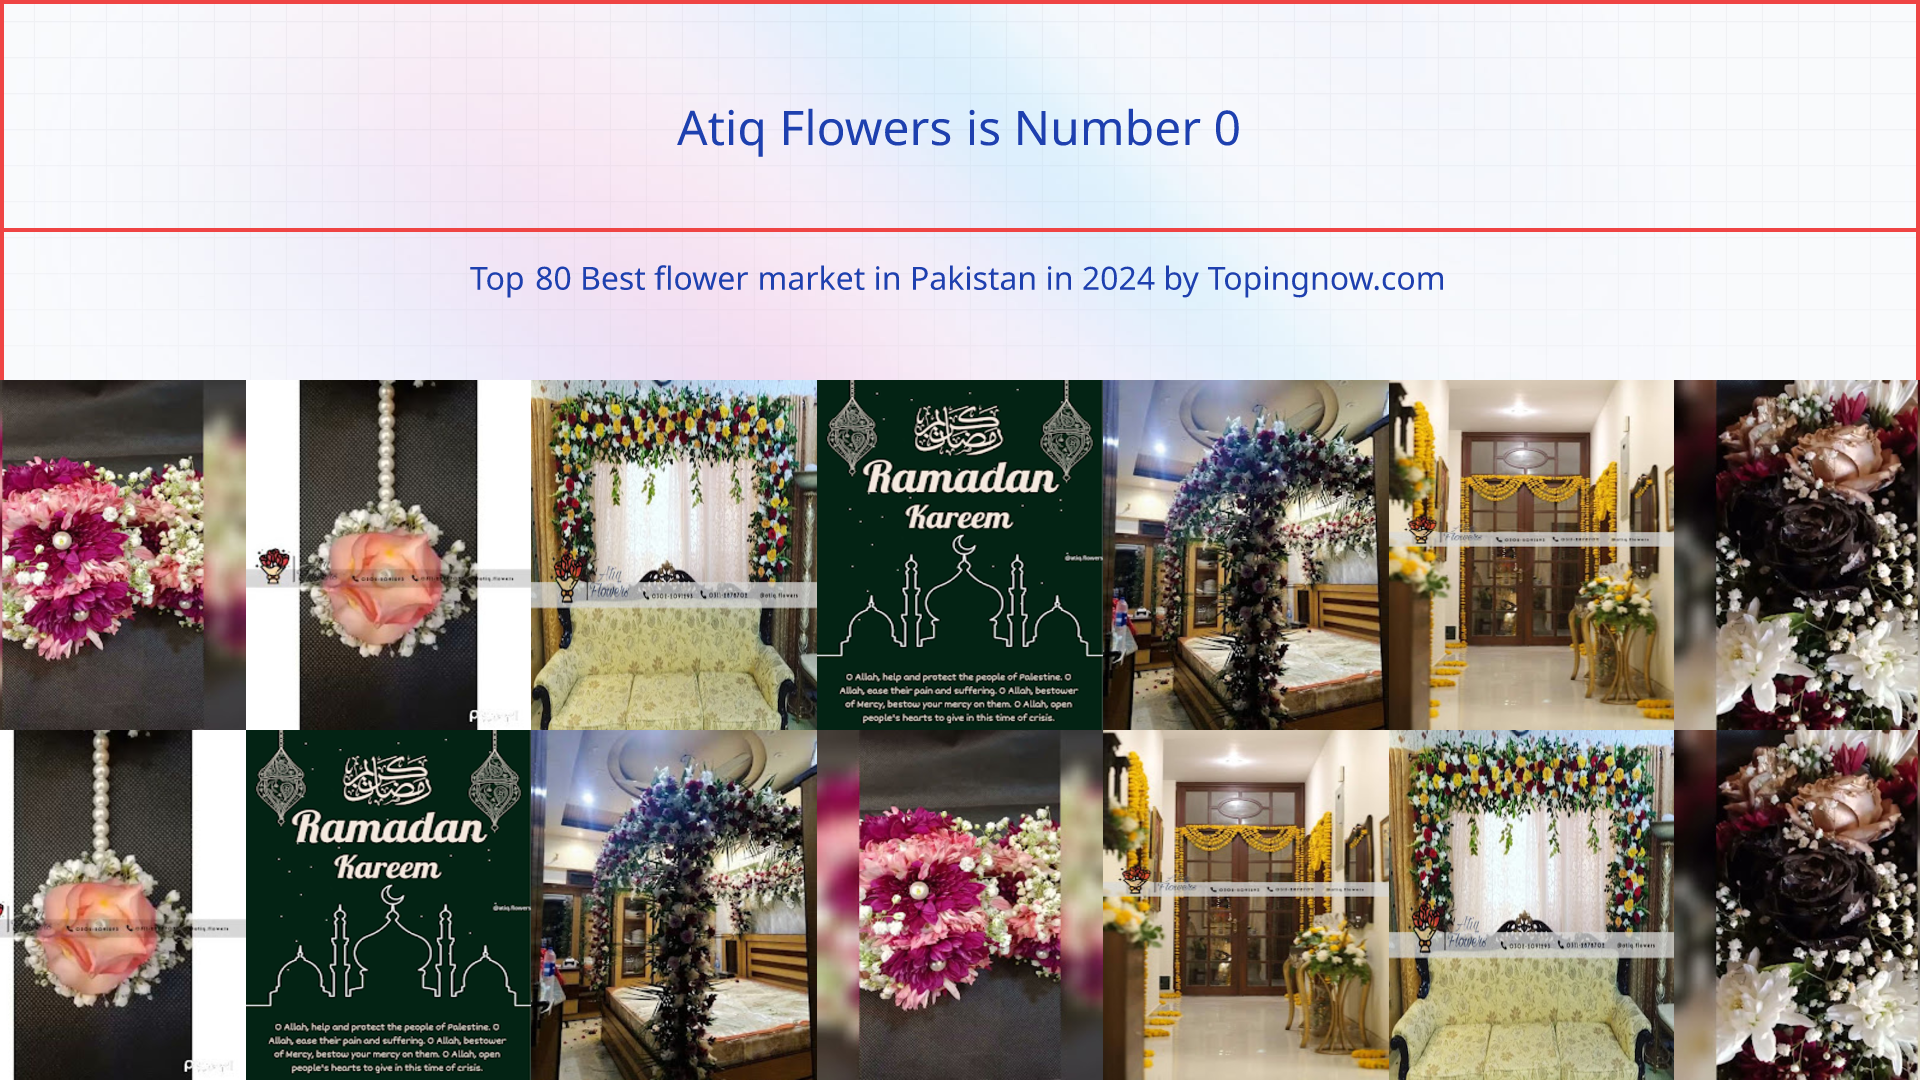 Atiq Flowers: Top 80 Best flower market in Pakistan in 2024